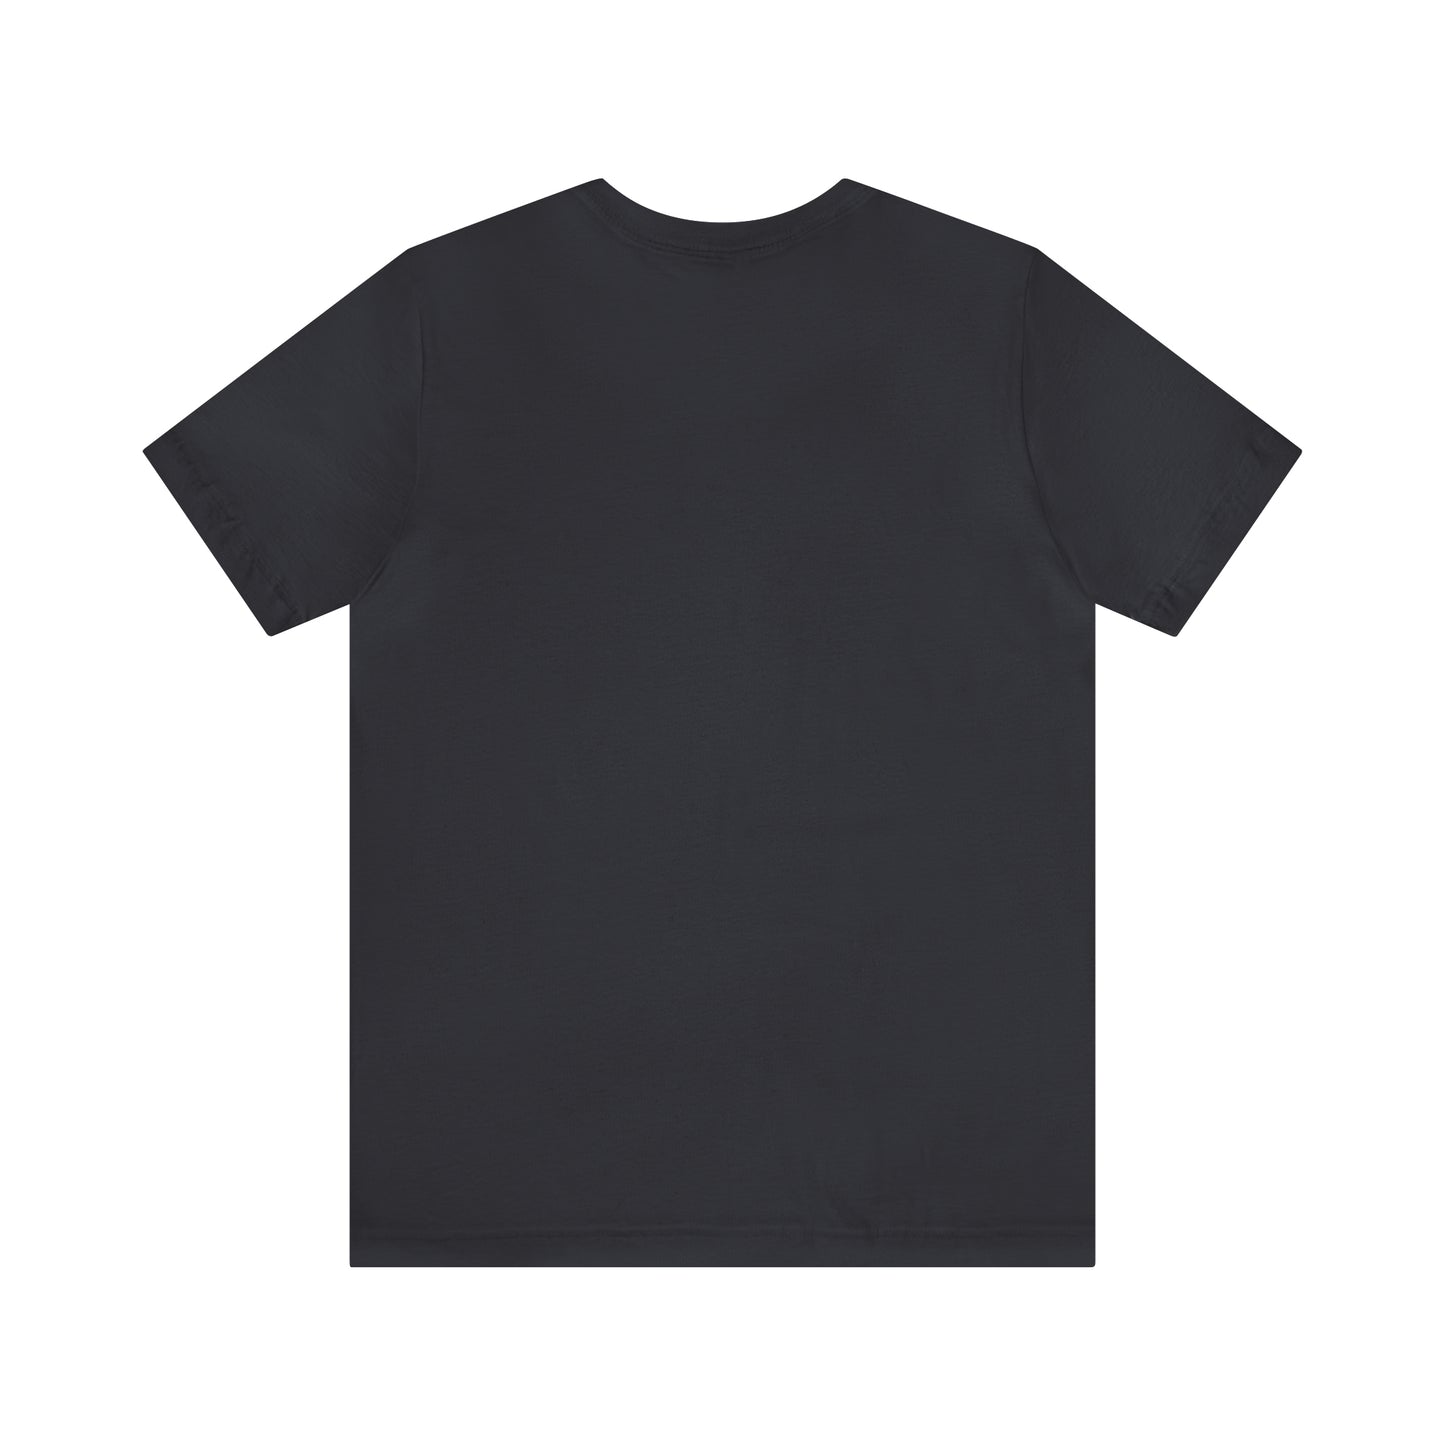 You Got This T-Shirt | Motivational T-Shirt T-Shirt Petrova Designs